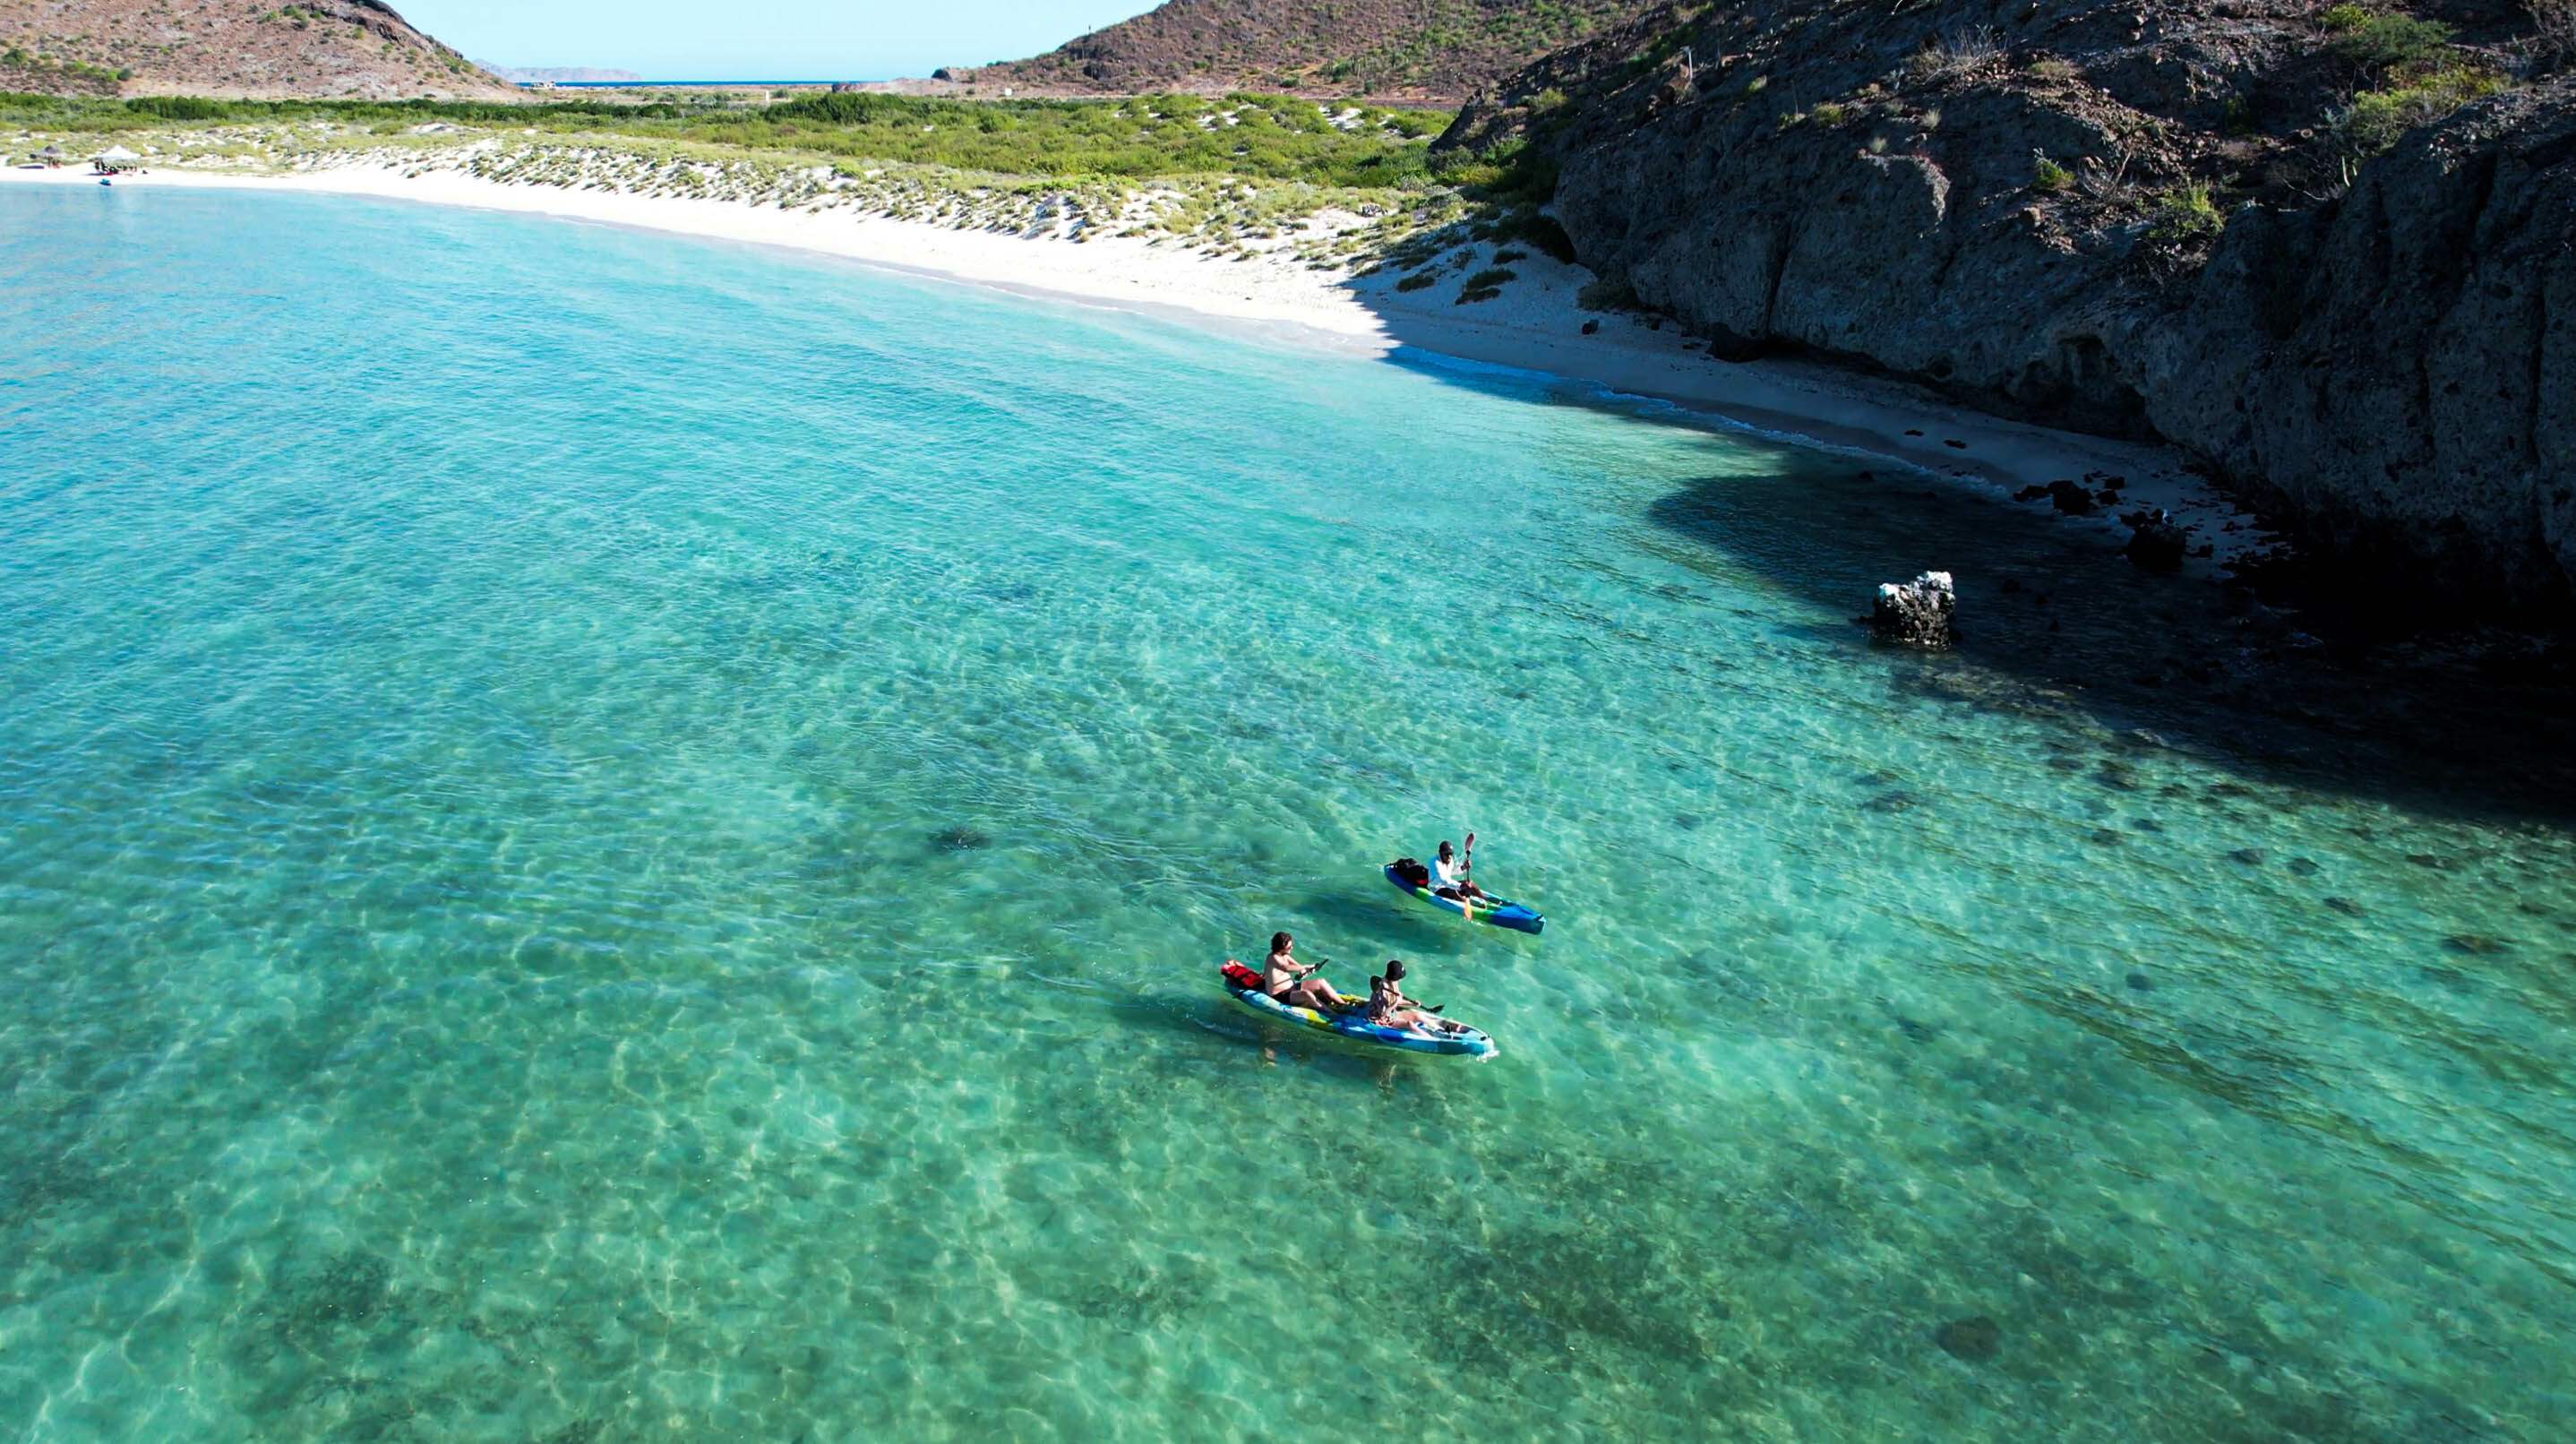 Descubre los maravillosos paisajes de La Paz y su fauna marina<br>a bordo de uno de nuestros Kayaks.